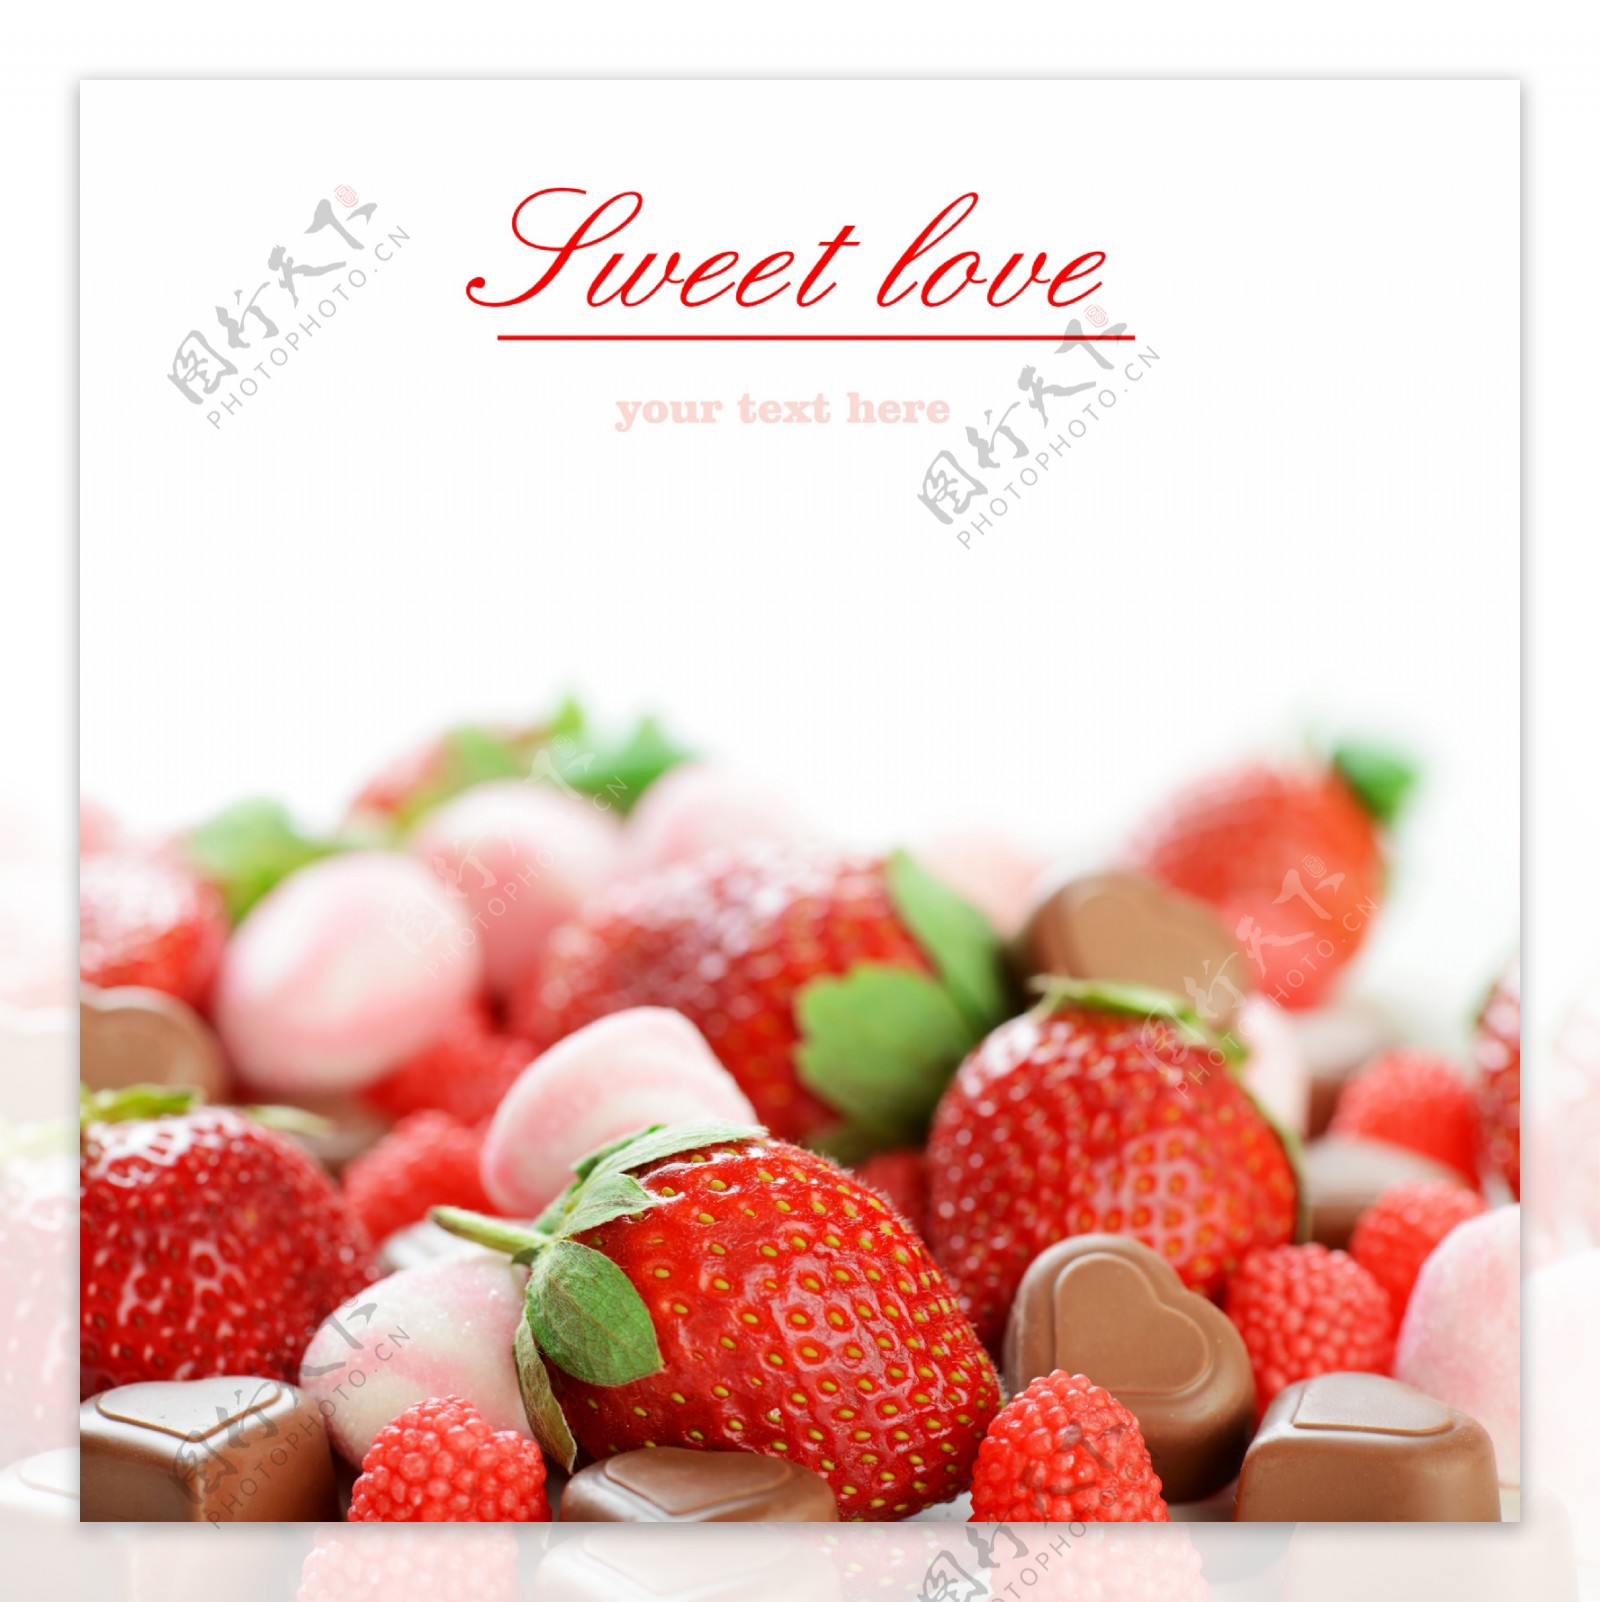 巧克力糖果与新鲜的草莓图片